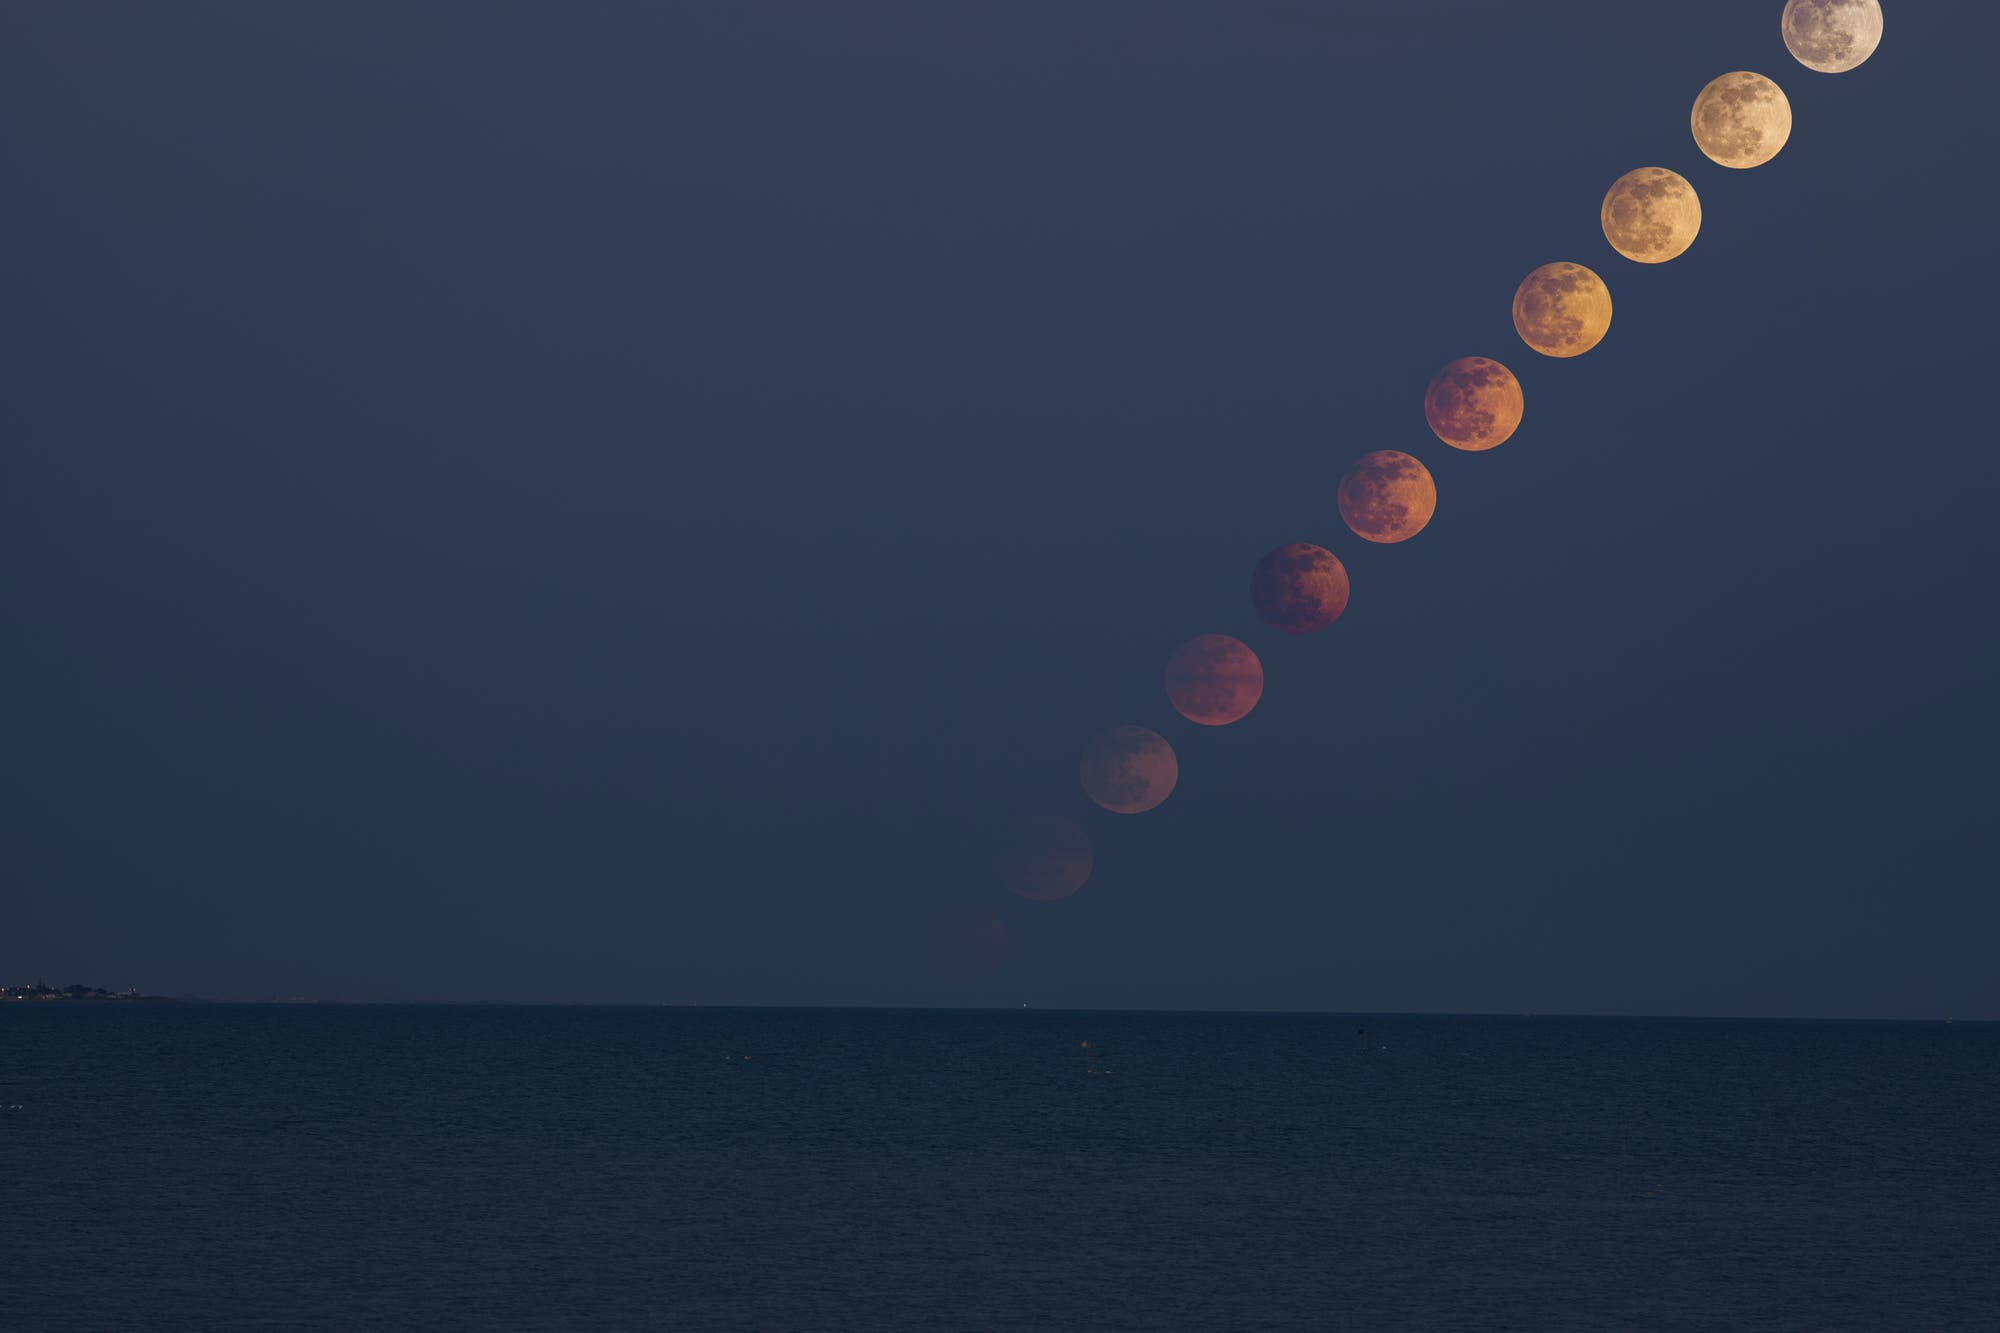 Penumbral lunar eclipse